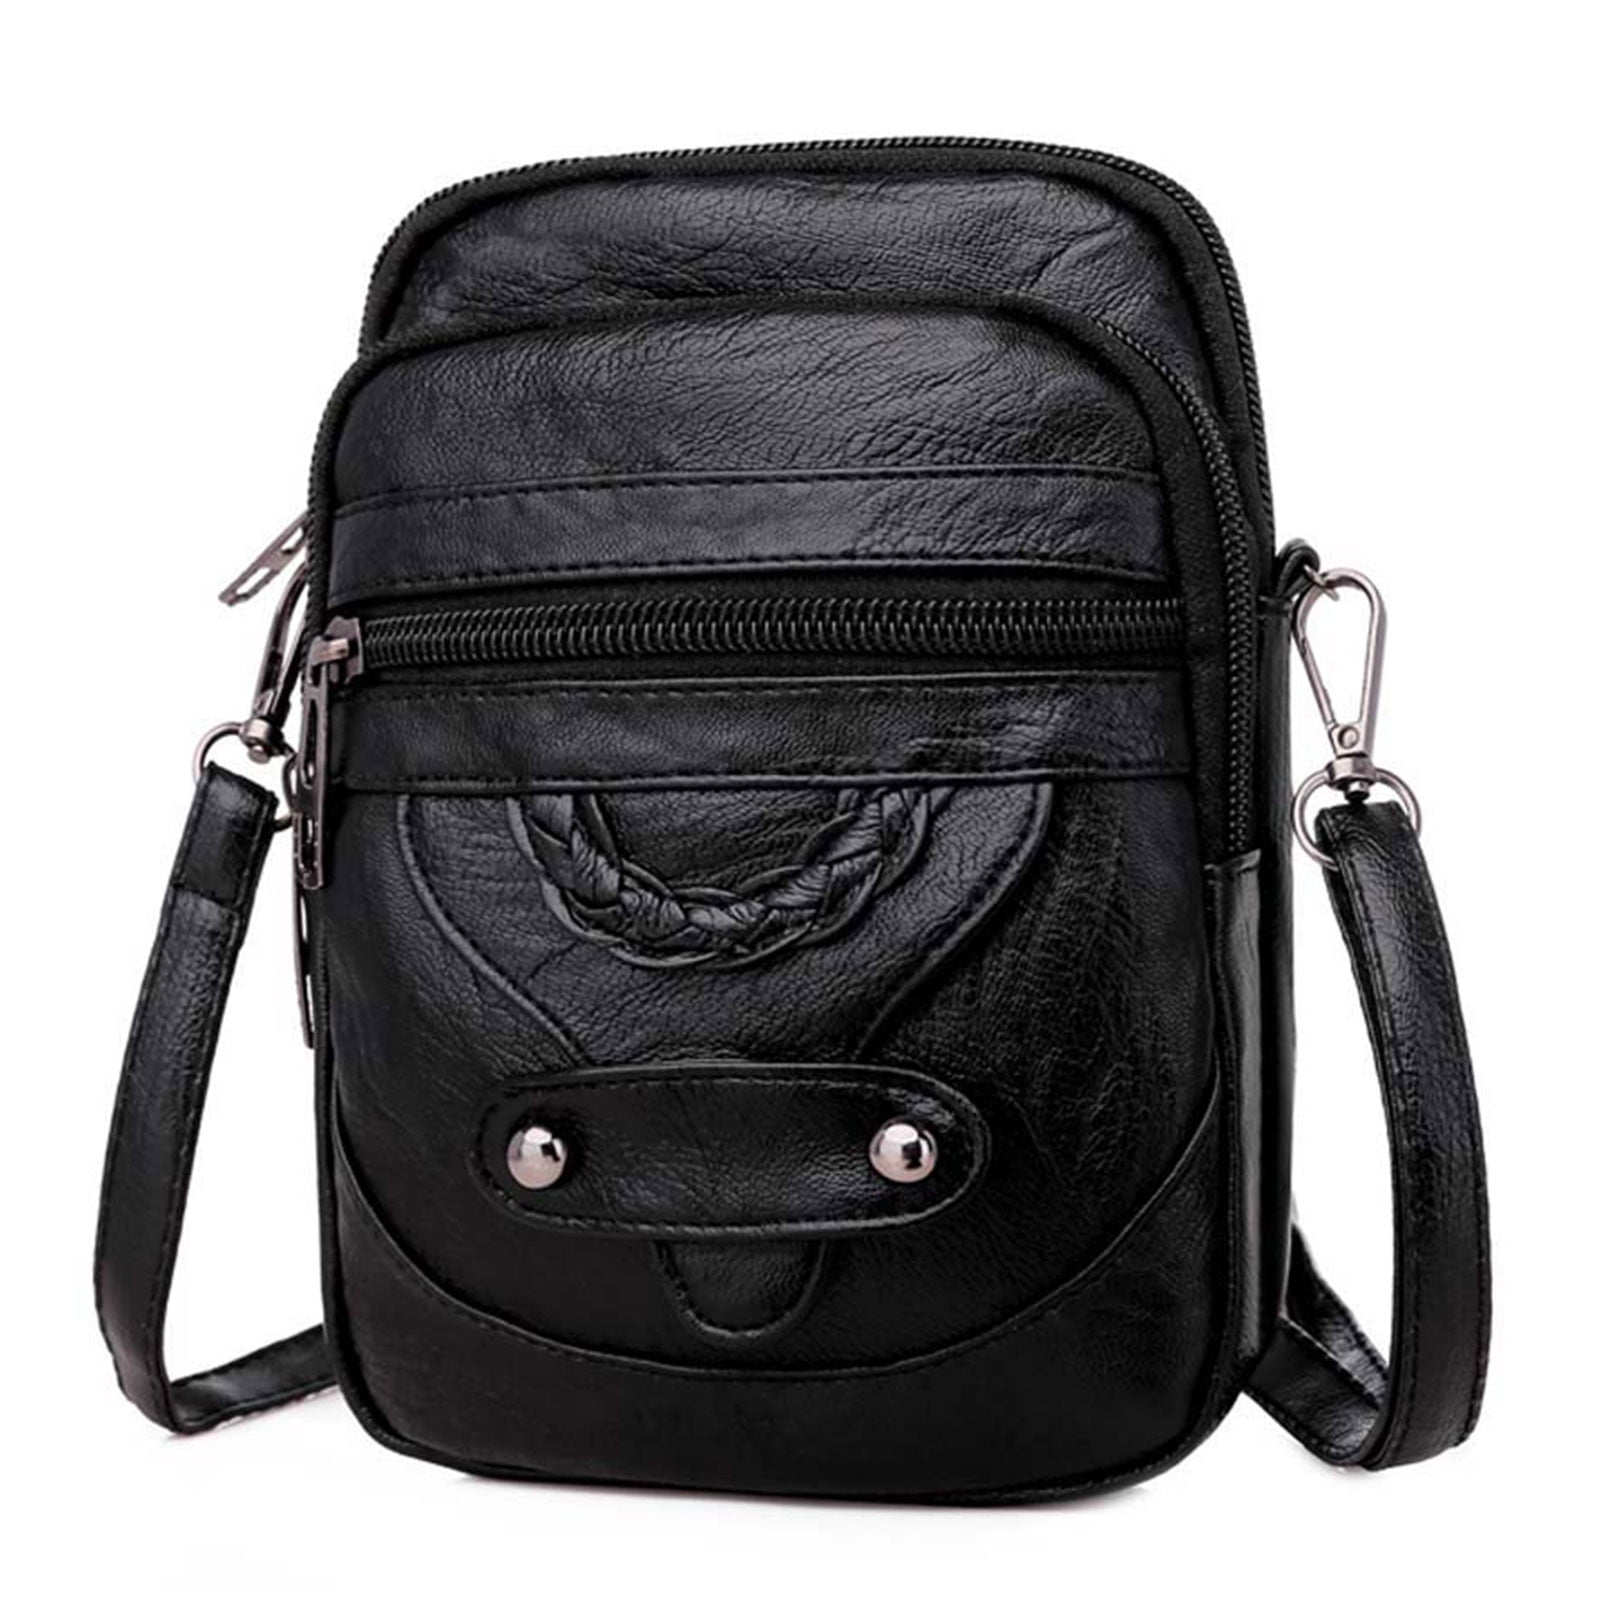 Strap Crossbody Bags Shopping bag Pocketbook Bag Vintage handbag tote Crossbody Bag Leather bag knapsack carrying bag messenger bag